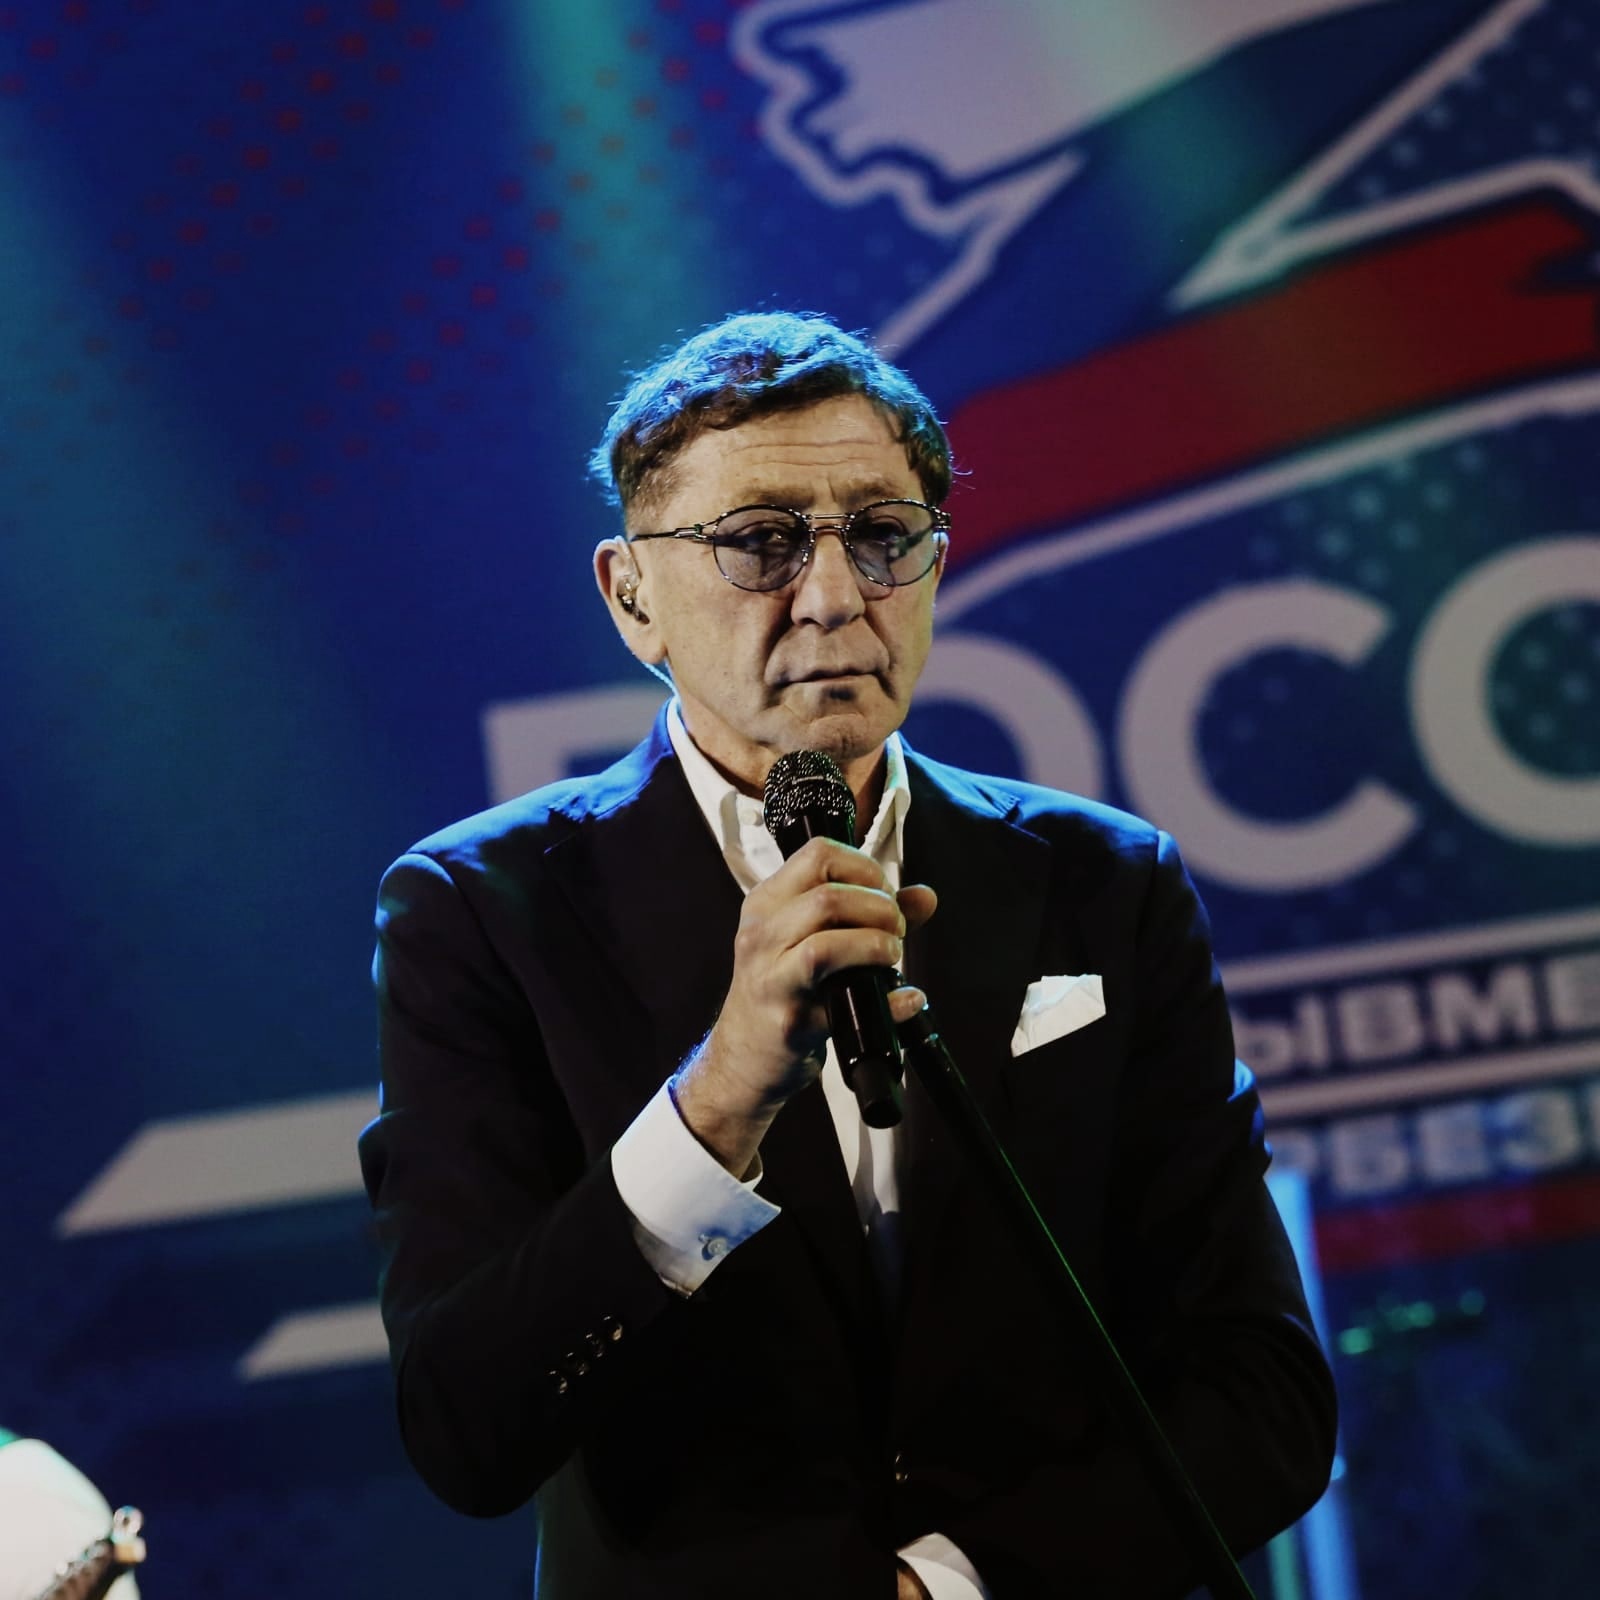 Певец Григорий Лепс выступил с благотворительным концертом «Zа Россию» в 2022 году